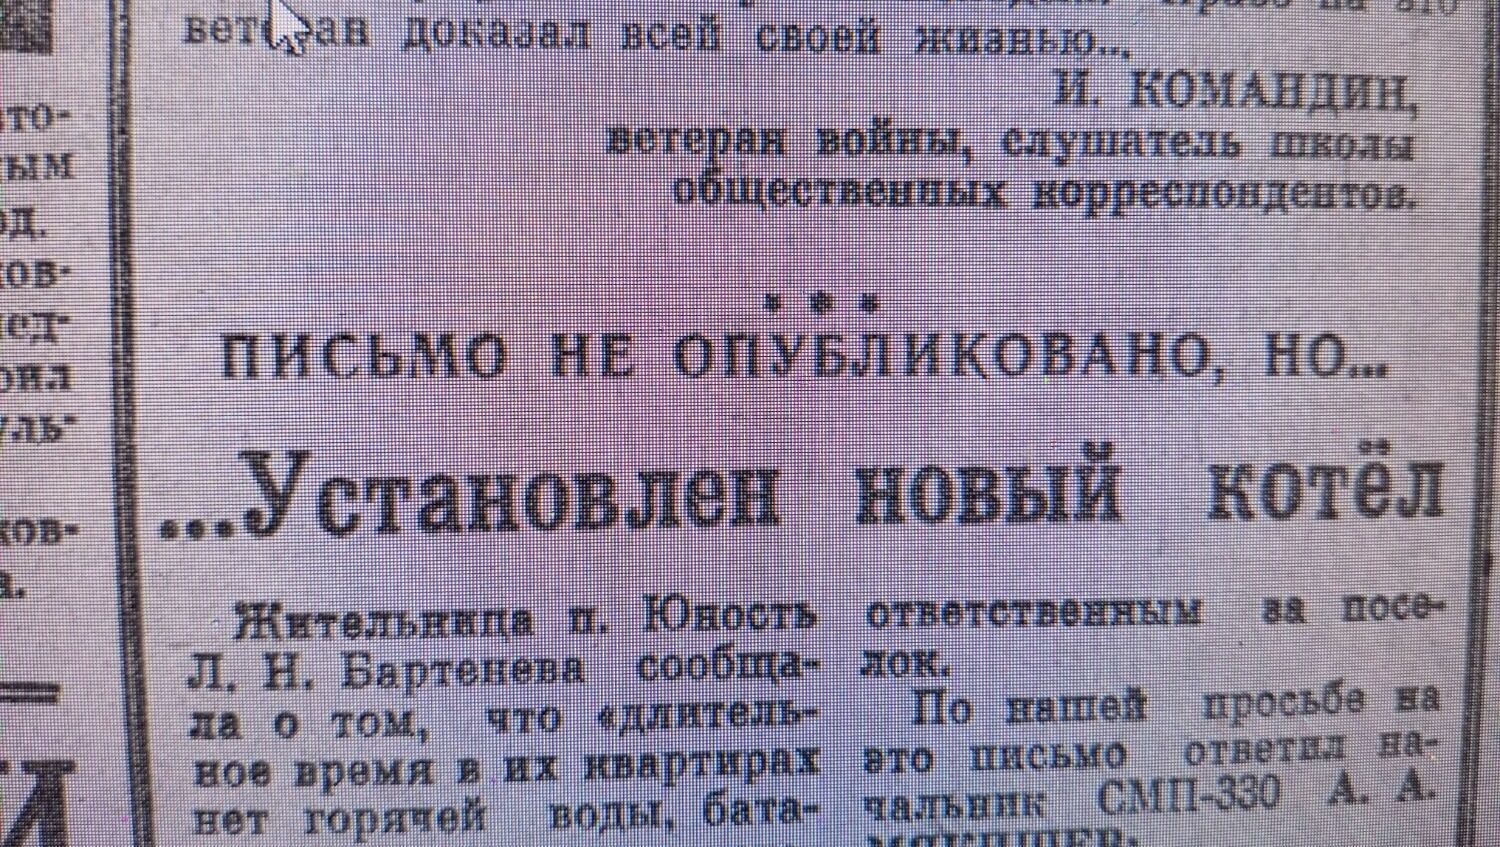 Из газеты «К победе коммунизма»